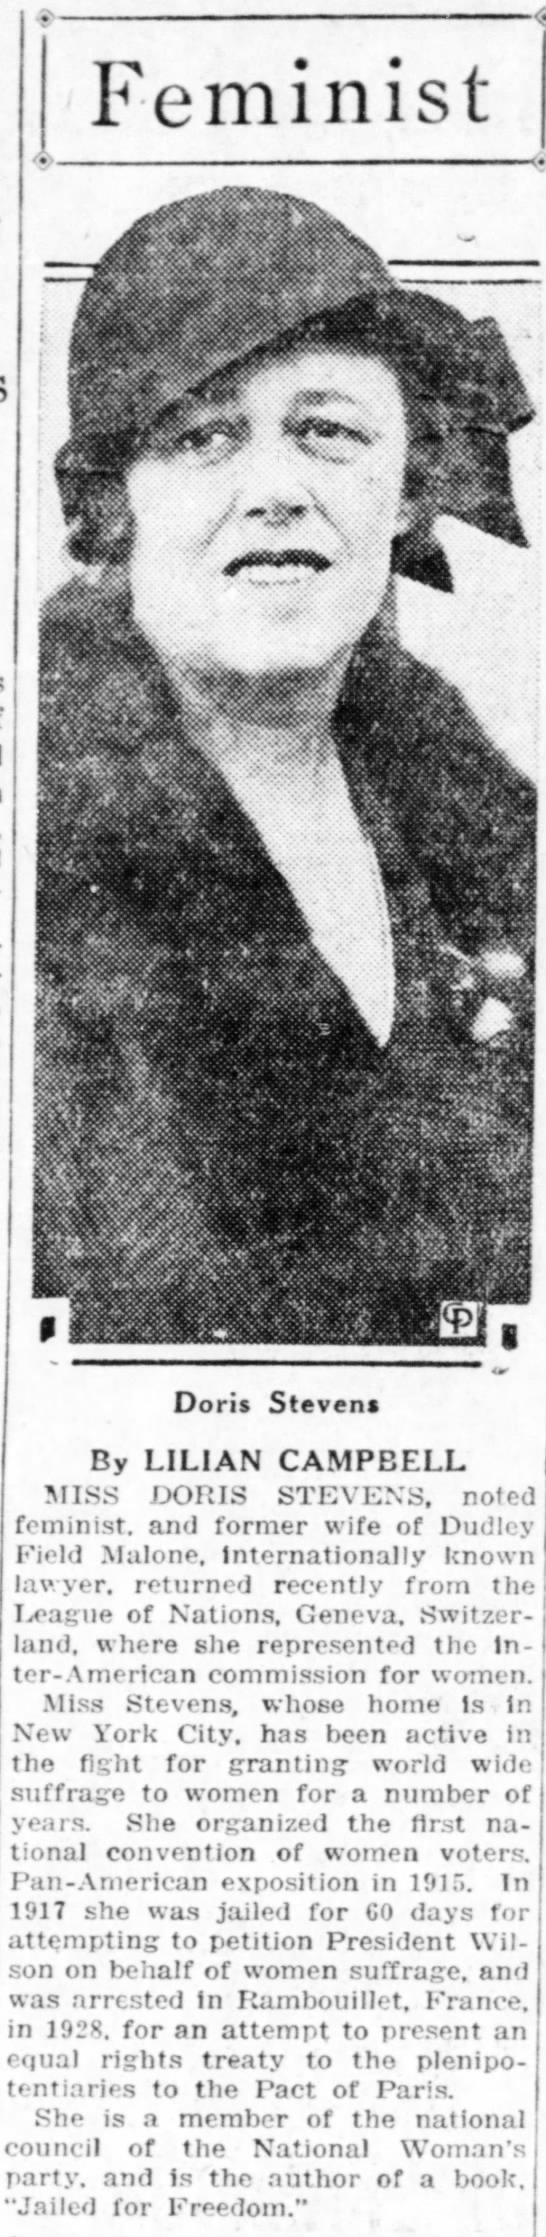 Campbell; Lilian. Feminist, Valley Morning Star, (Harlingen, Texas) 15 September 1931, p 4 - 